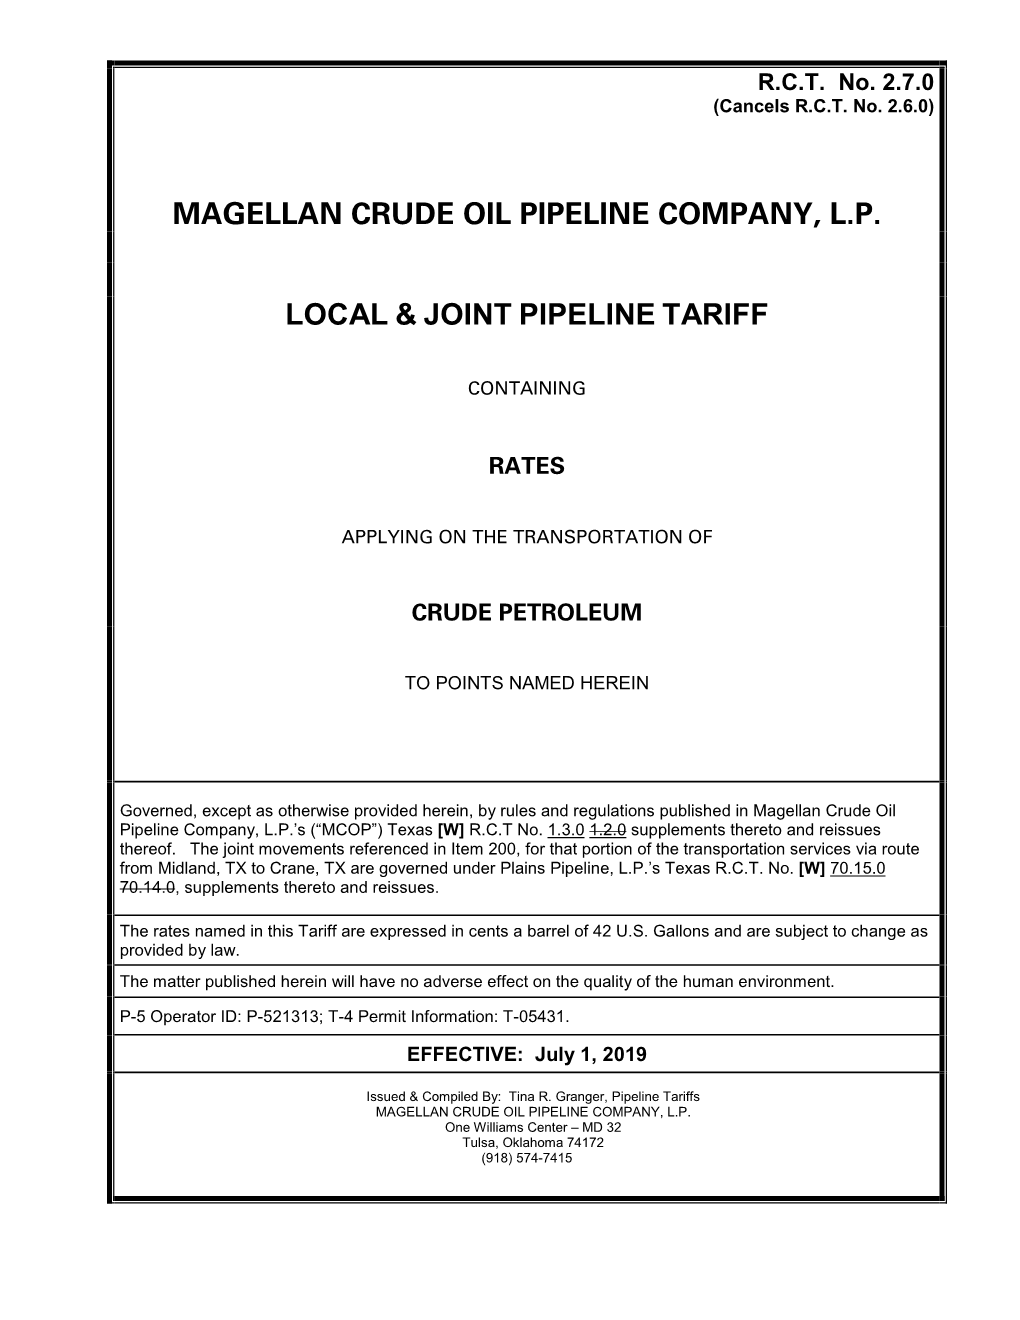 Magellan Crude Oil Pipeline Company, L.P. Local & Joint